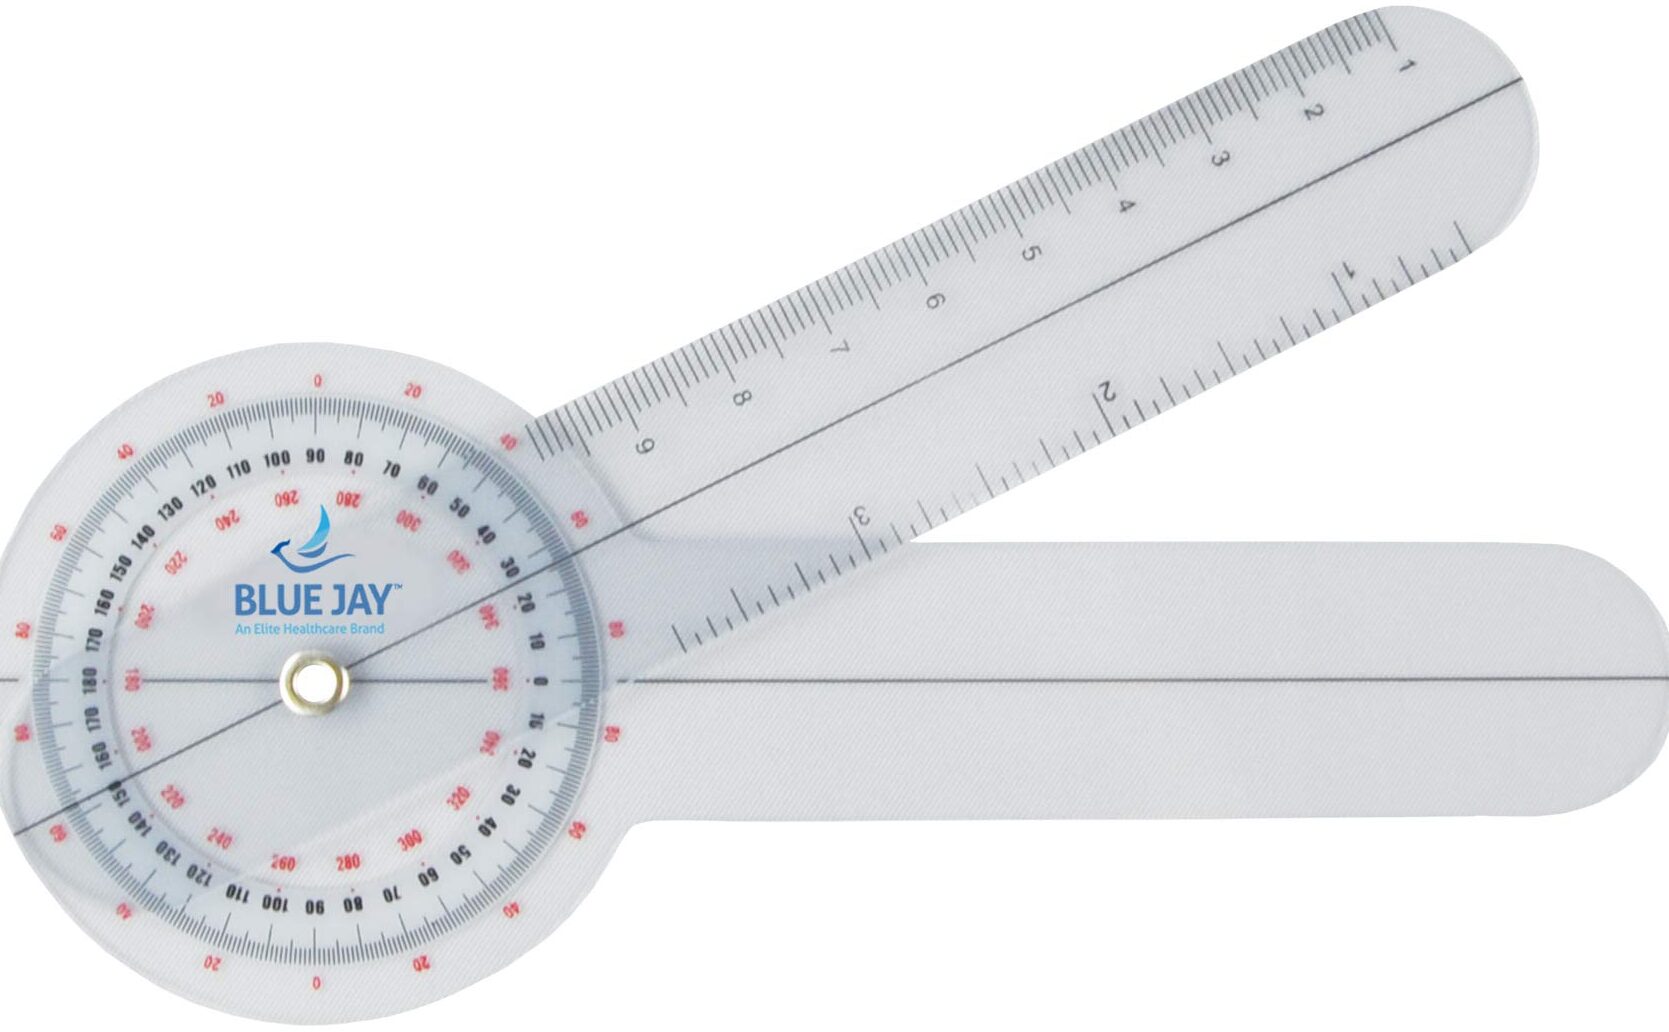 Optimizando la precisión en mediciones: transportador y goniómetro